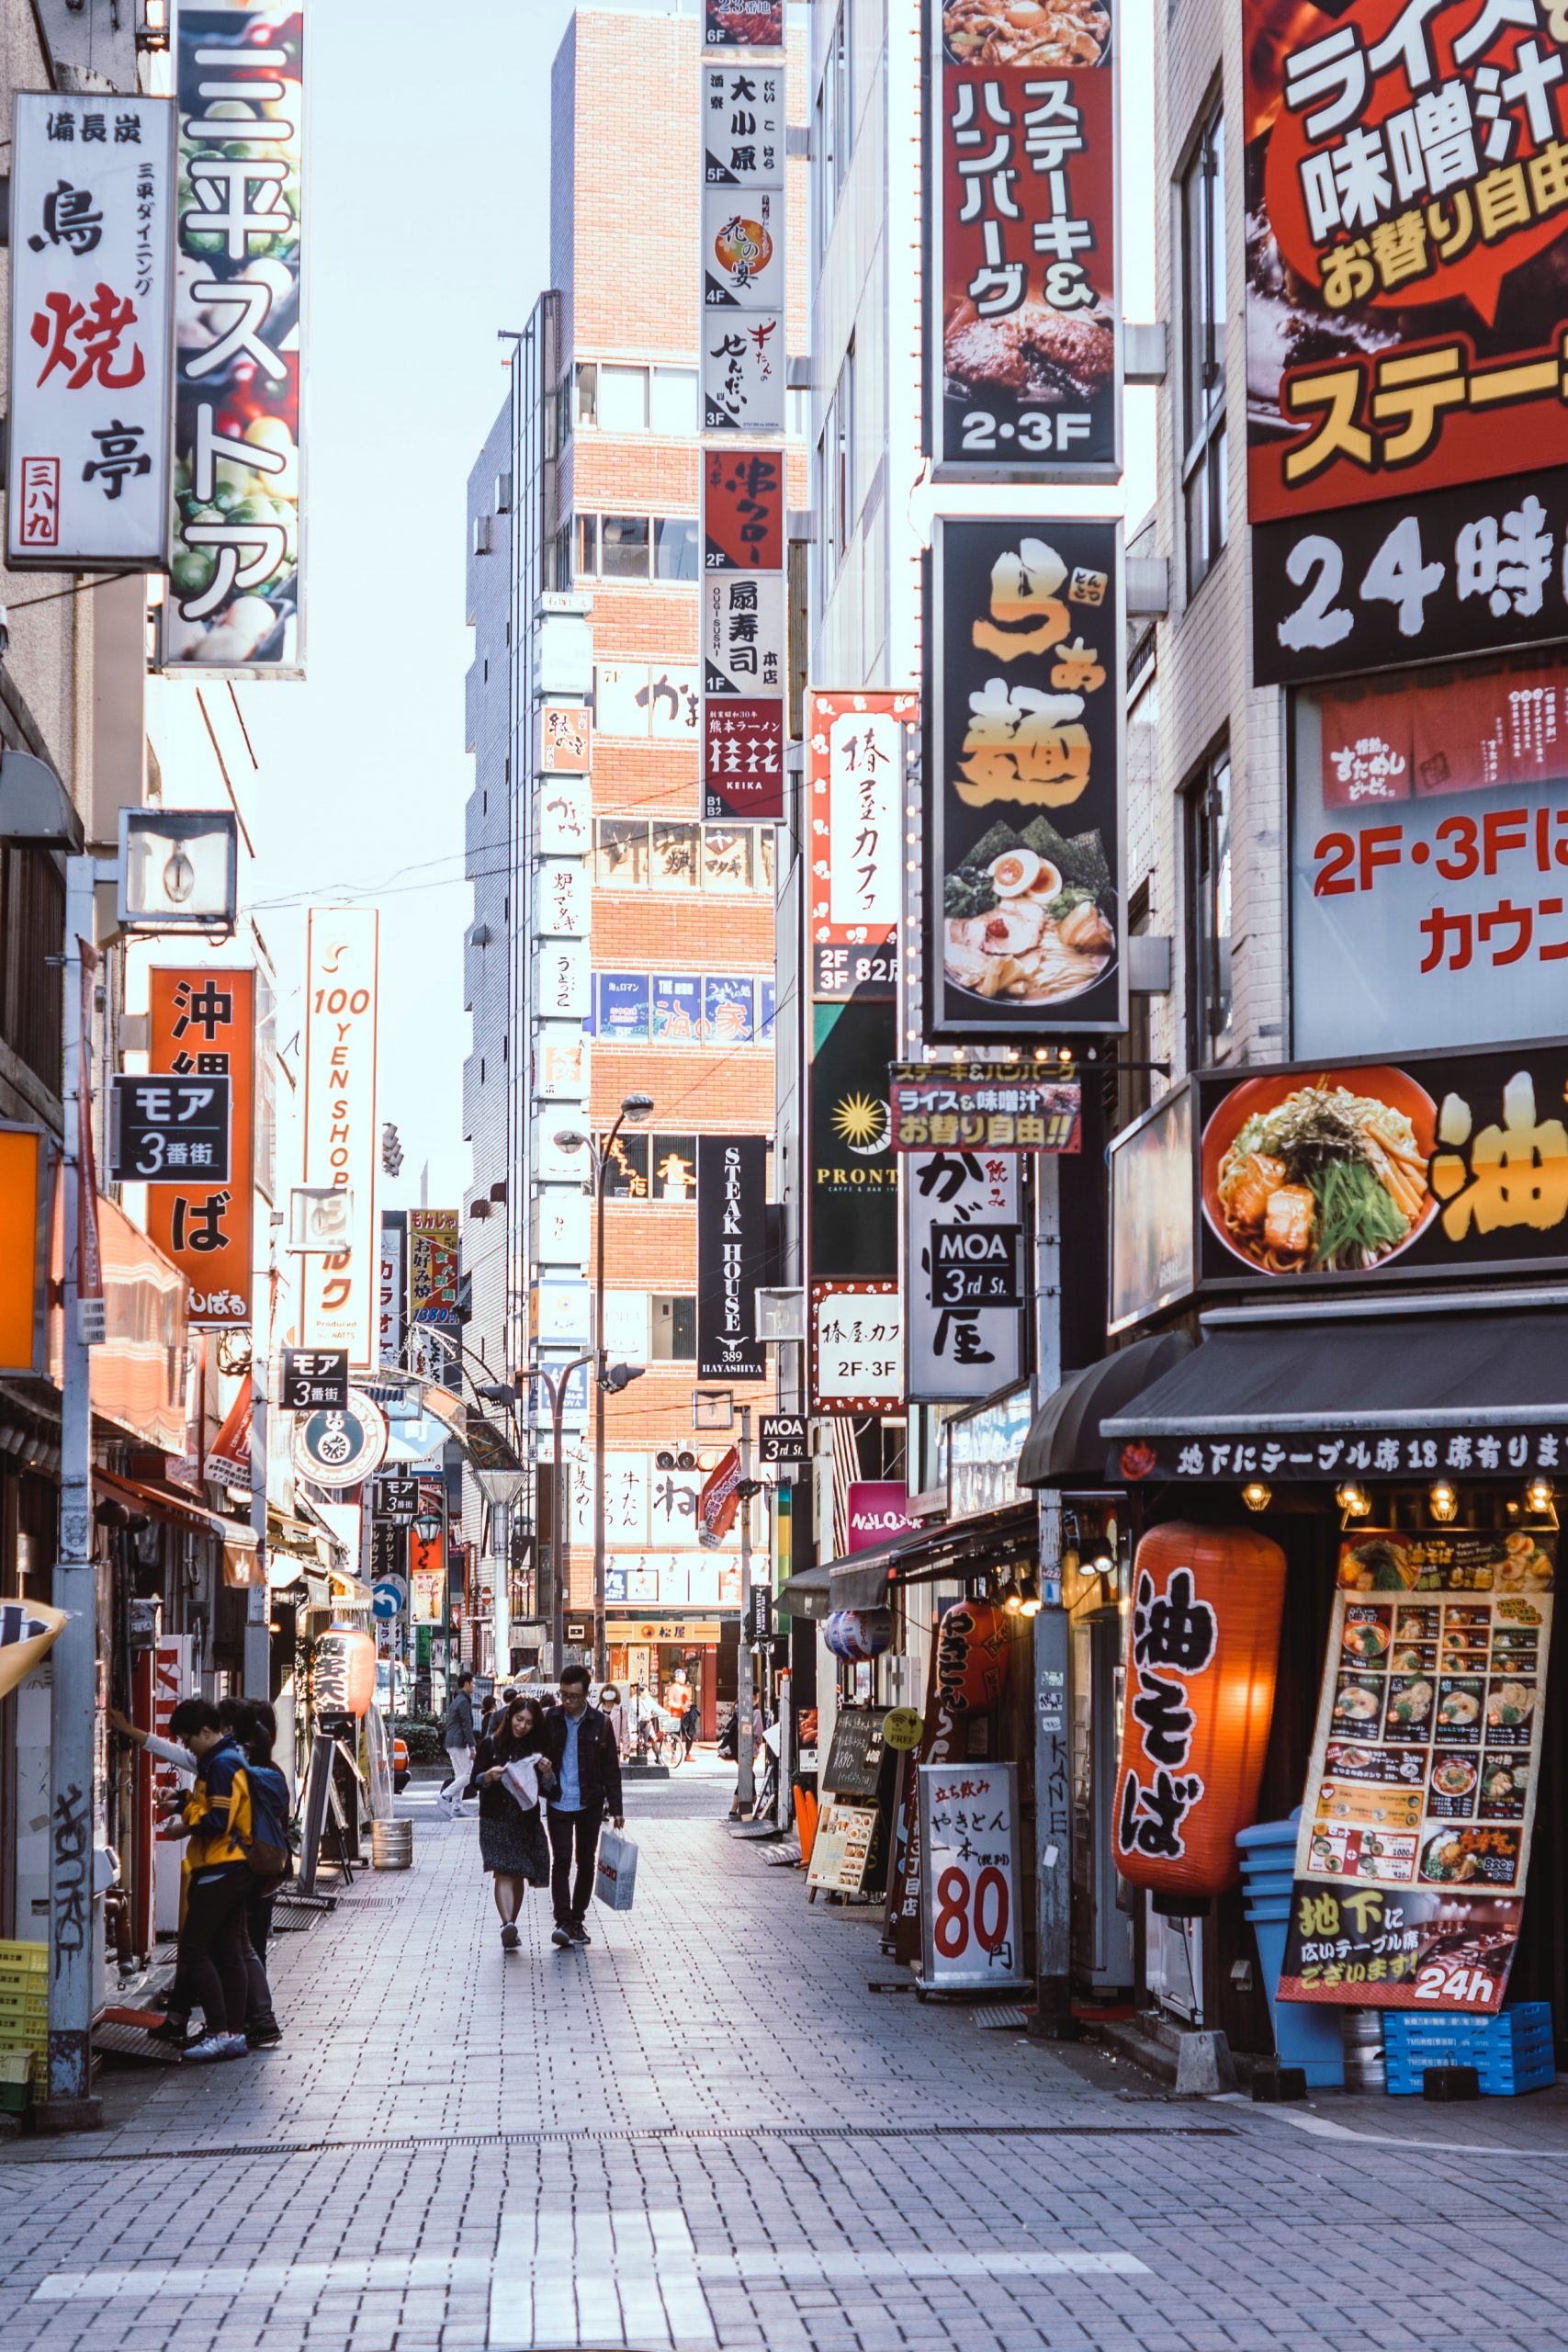 Pembelajaran dari Jepang: Mulai Terbenamnya Ekonomi Si Matahari Tebit